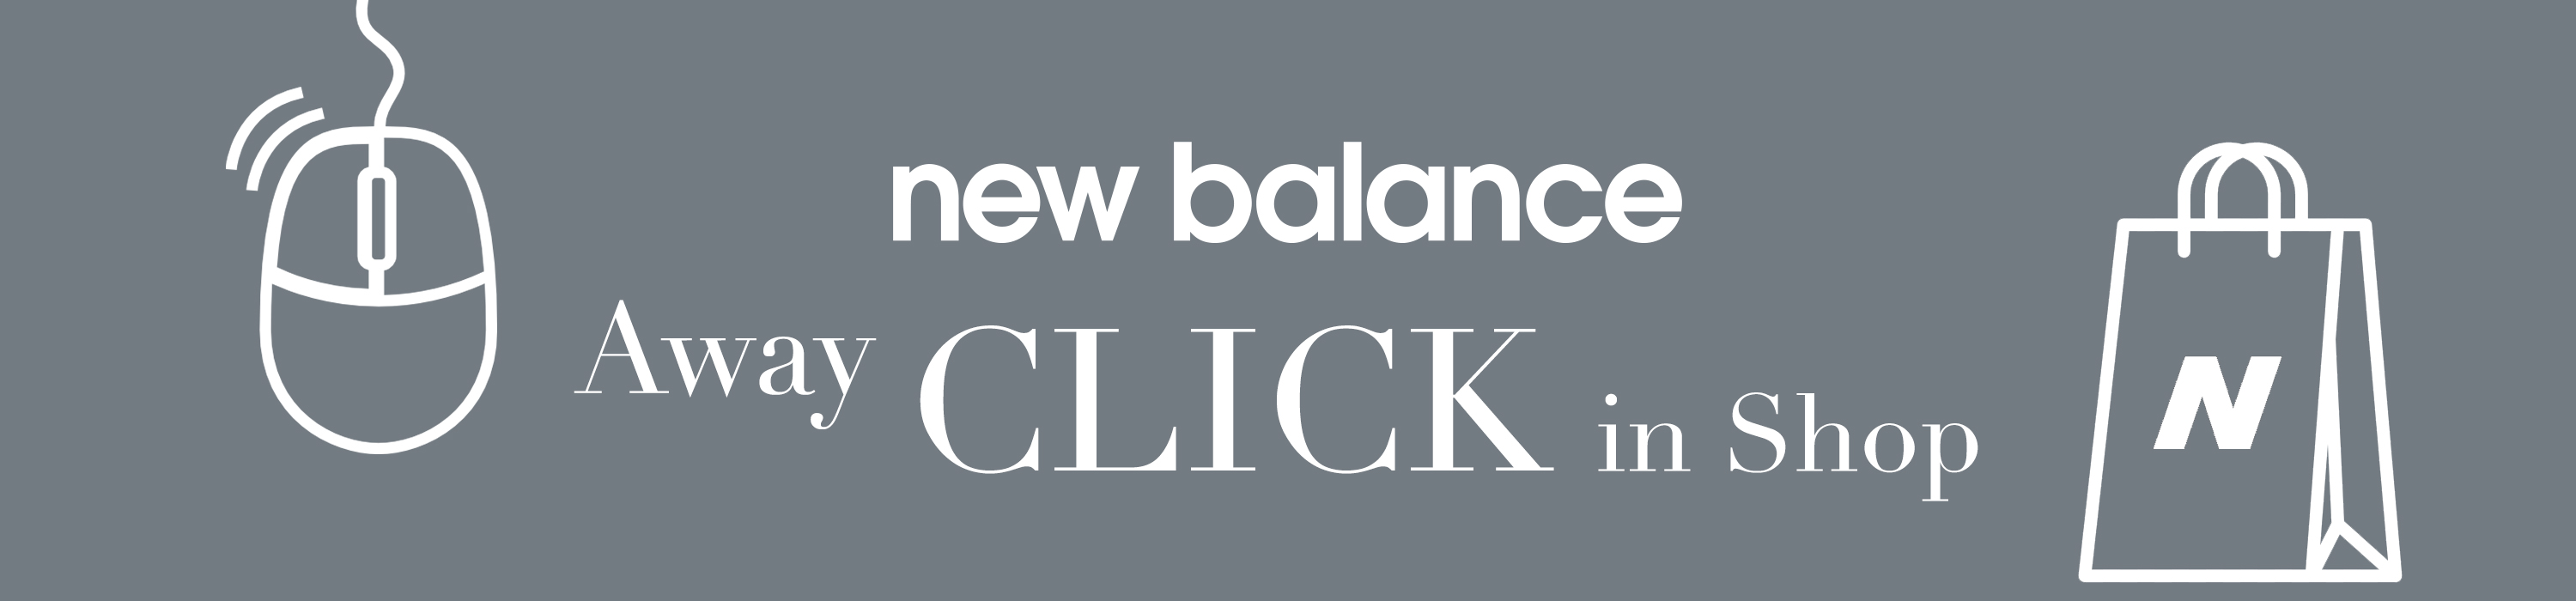 ΥΠΗΡΕΣΙΑ ΠΕΛΑΤΩΝ | New Balance